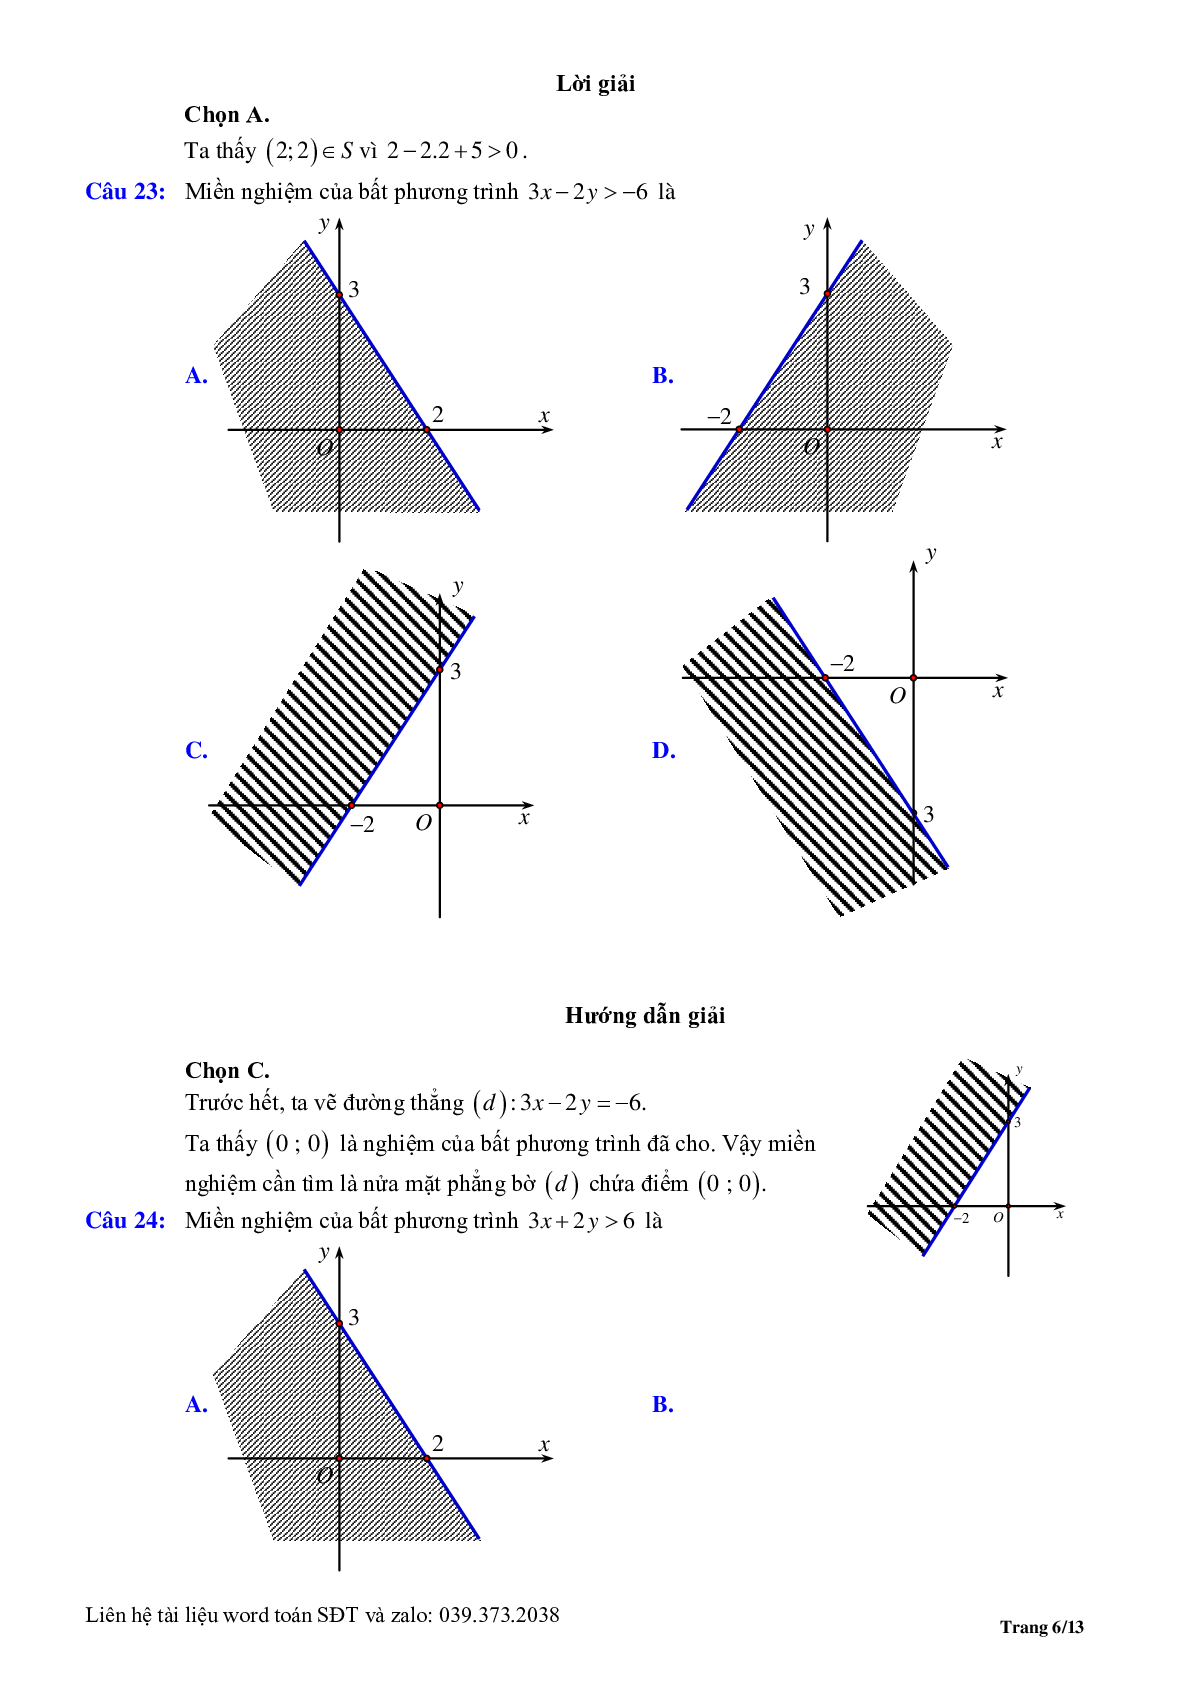 Chuyên đề bất phương trình, hệ phương trình bậc nhất hai ẩn (trang 6)